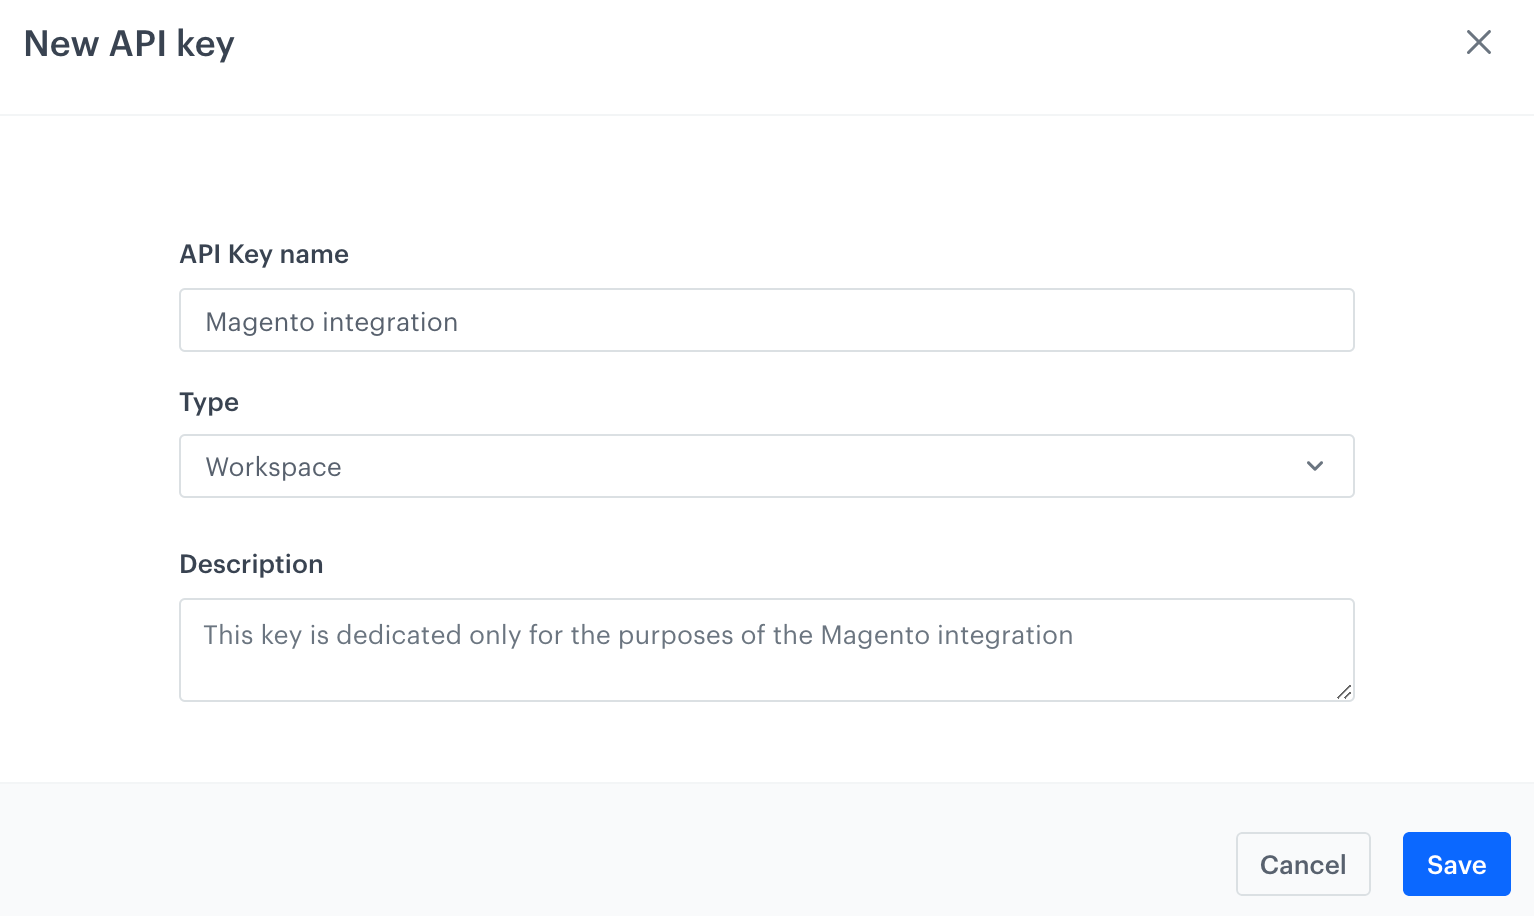 Adding a new API key for the Magento integration